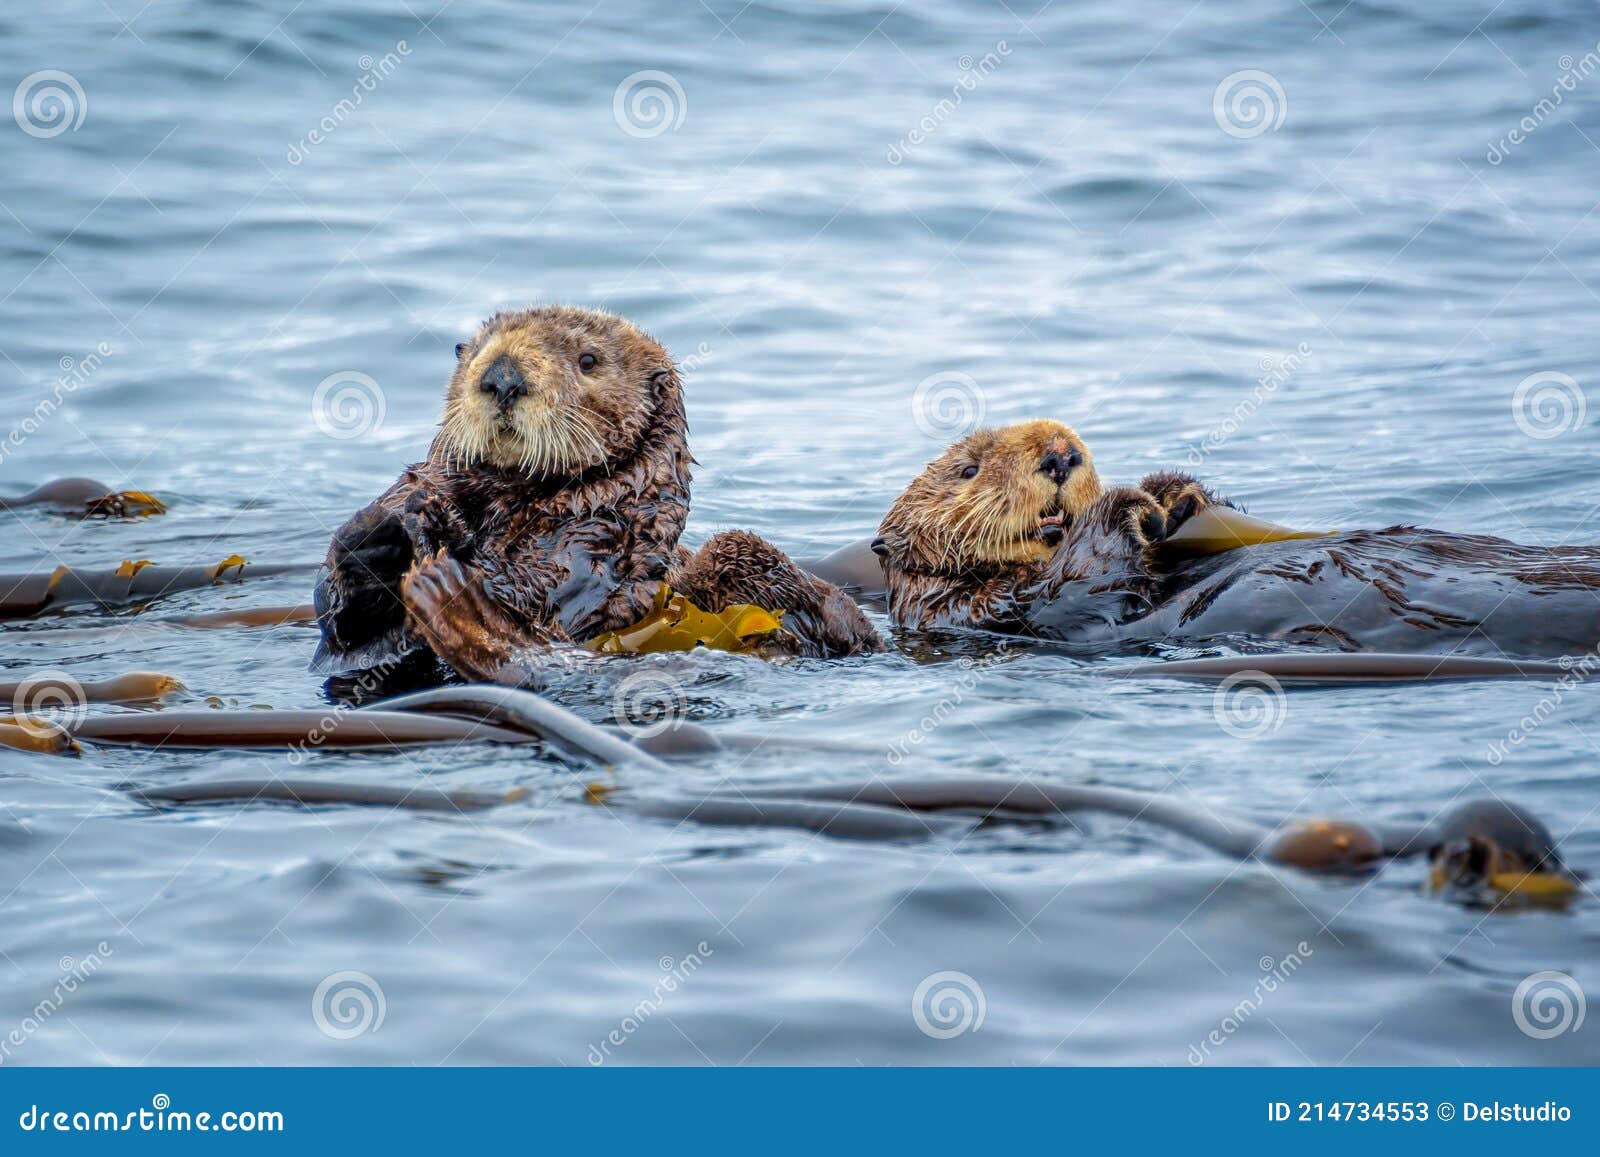 sea otters in the ocean in tofino, vancouver island, british columbia canada